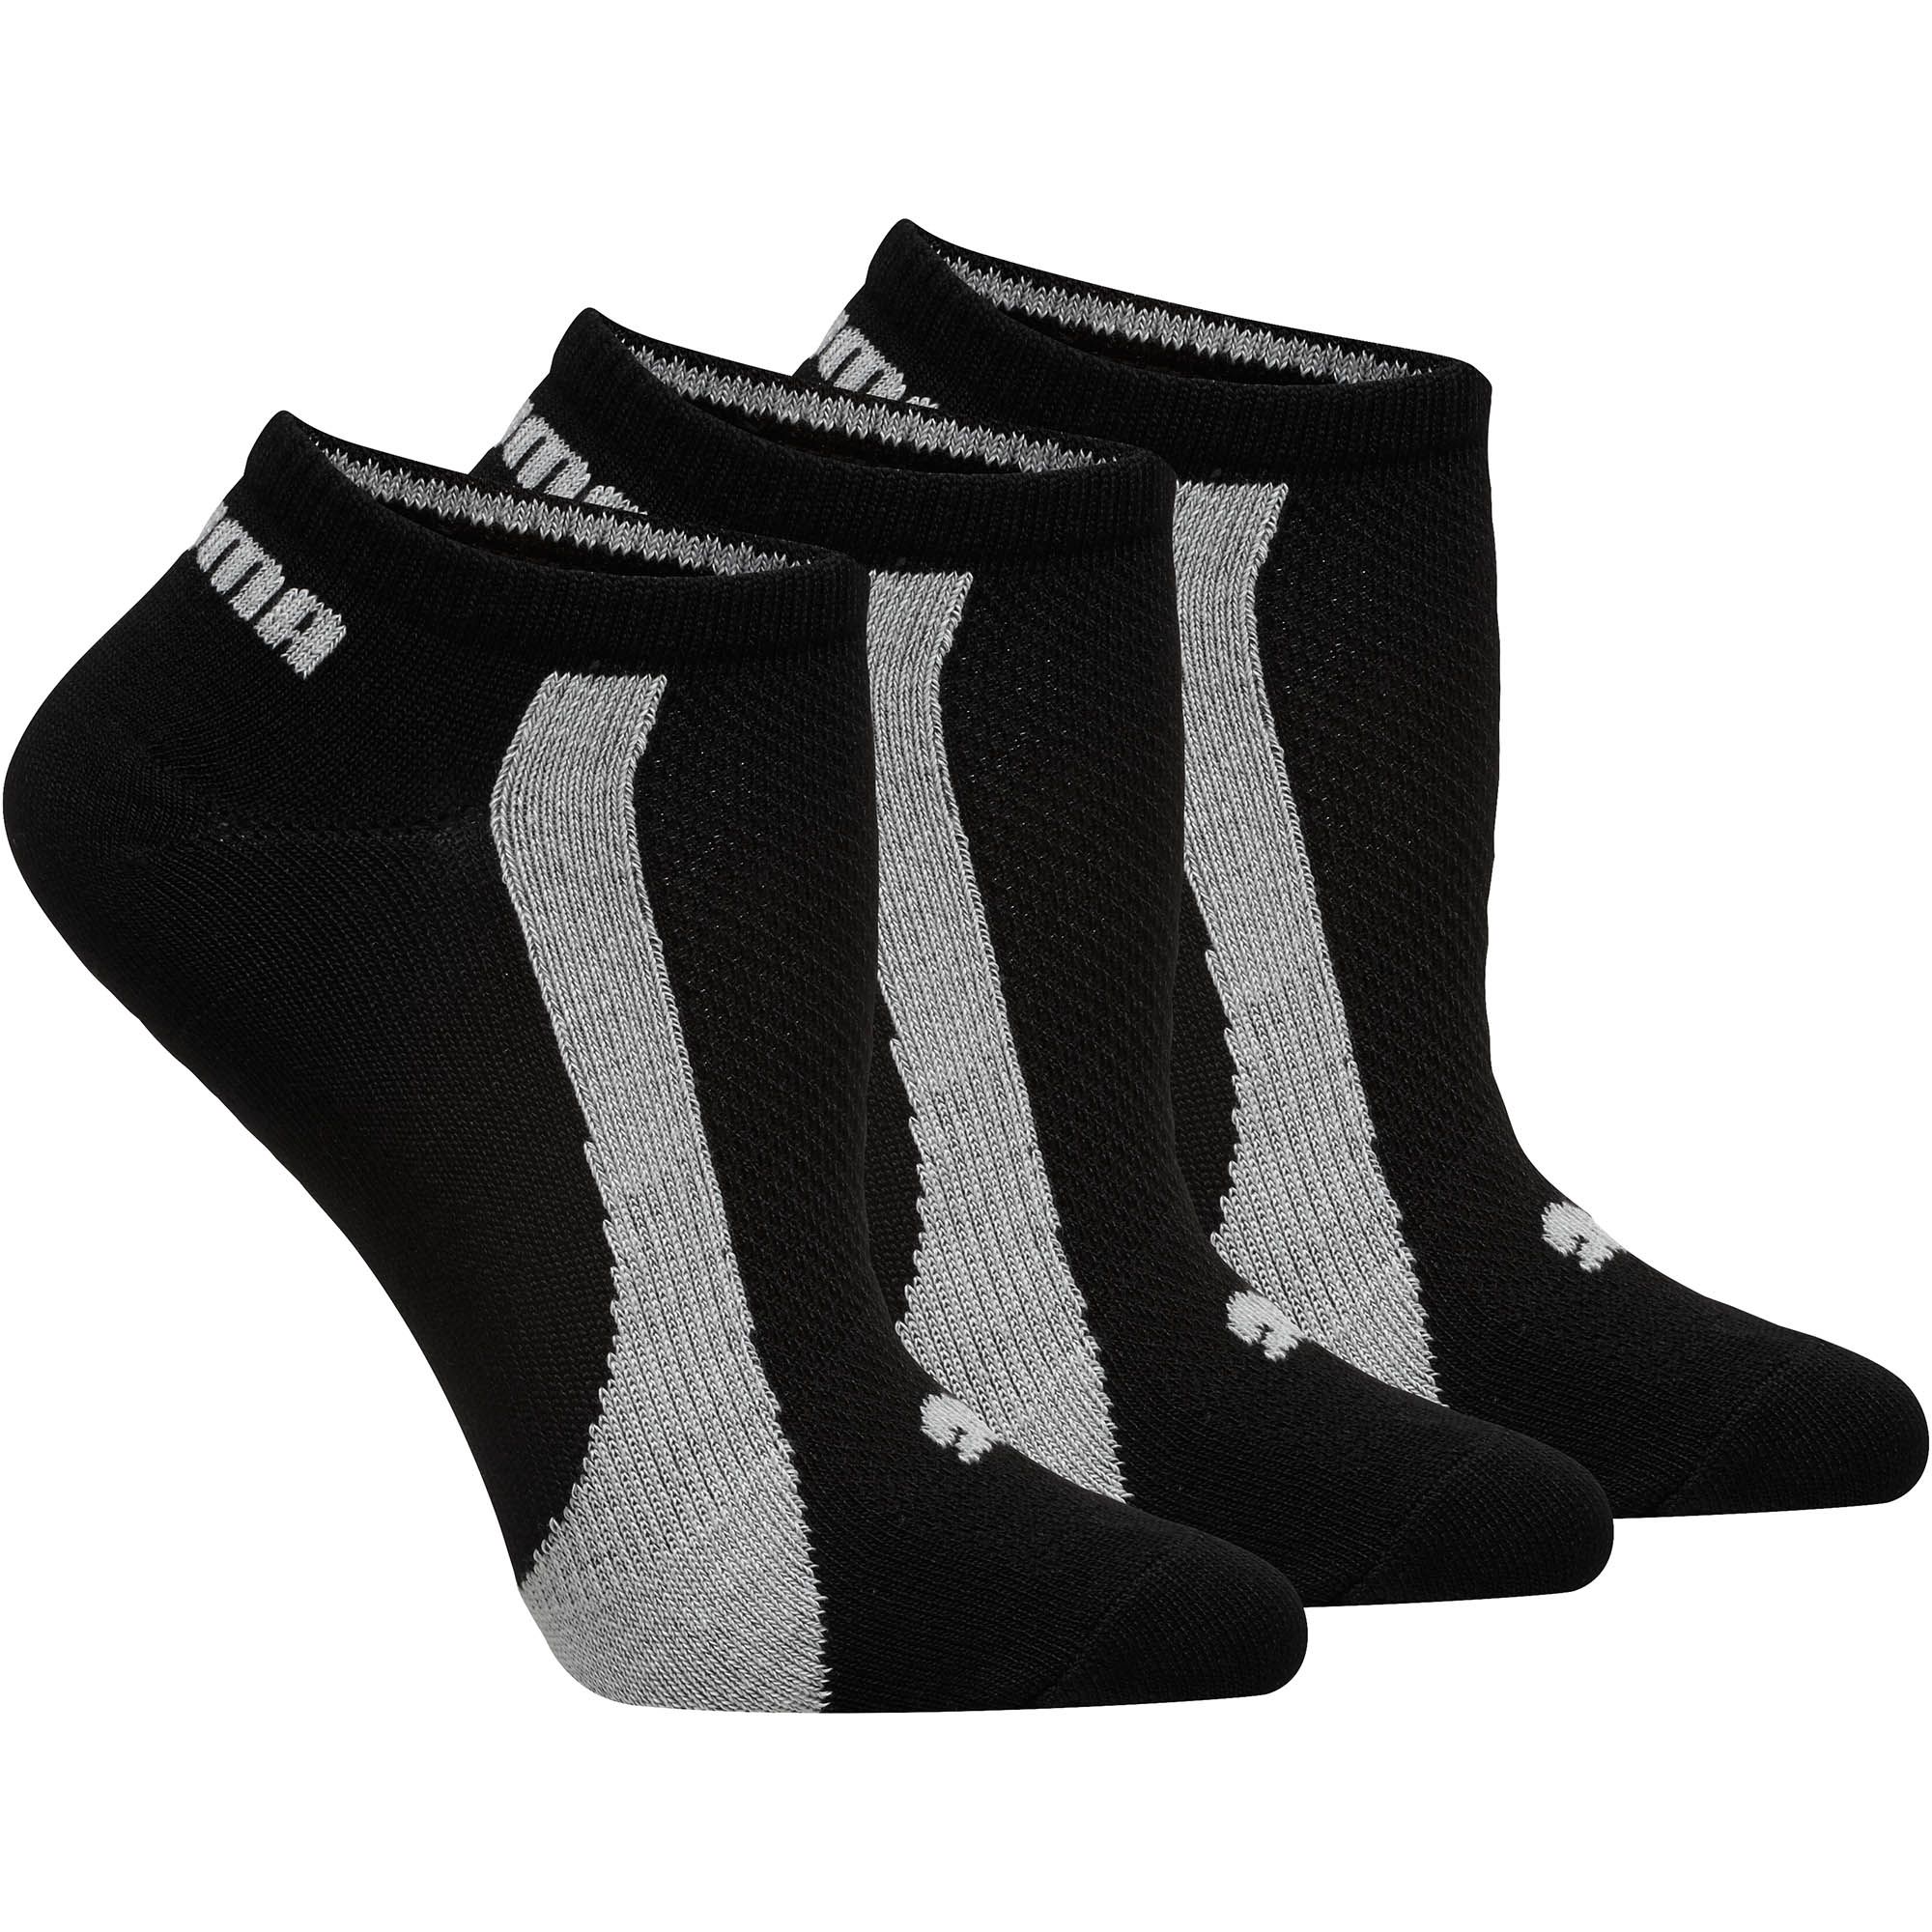 PUMA® Women's Athletic Socks | Running Socks, Soccer Socks & More